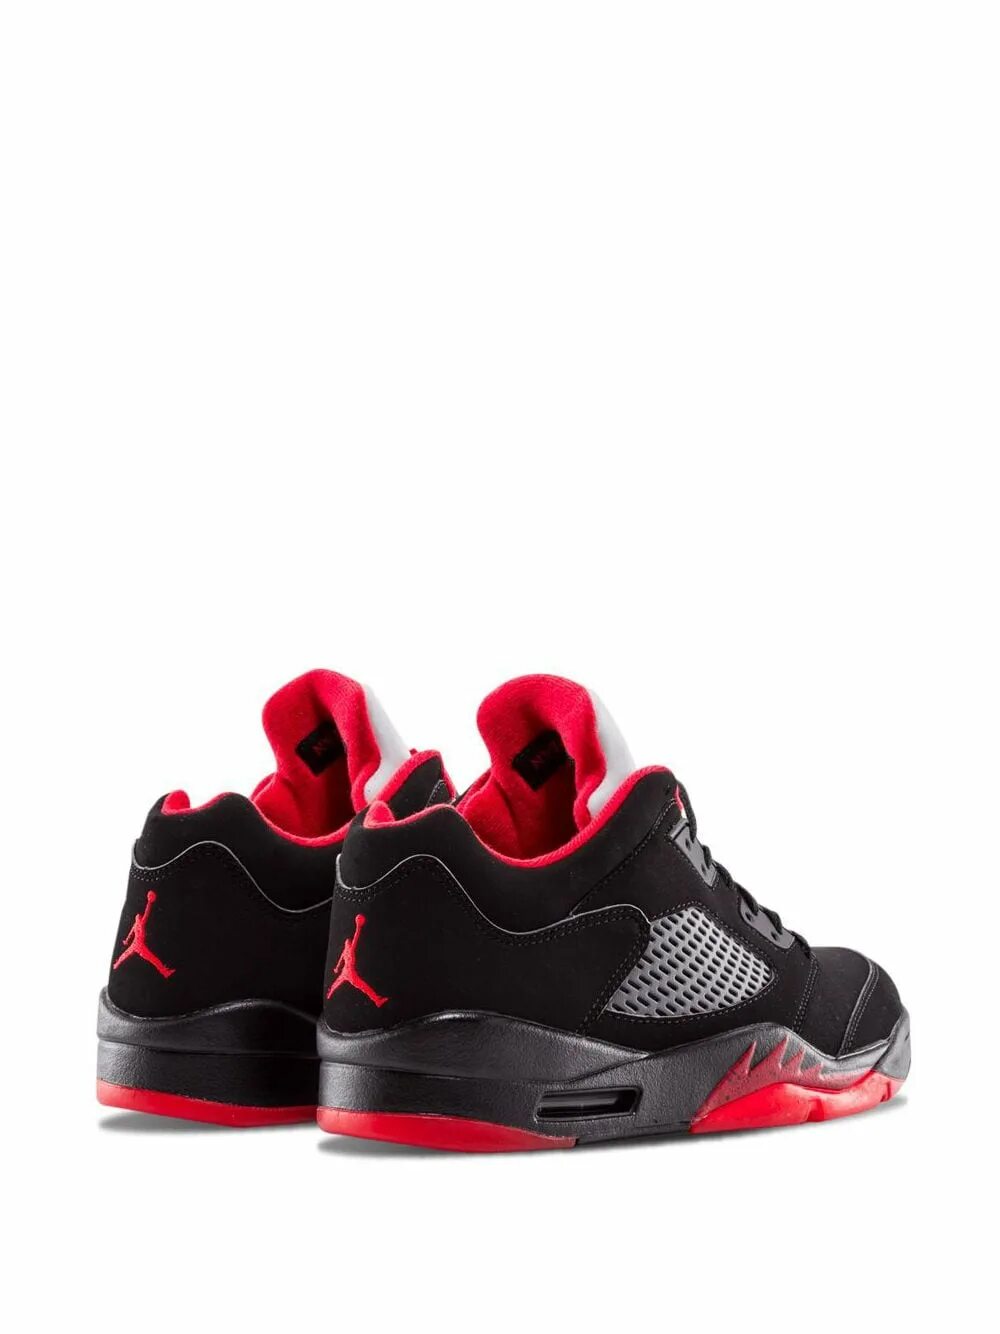 Jordan кроссовки купить оригиналы. Nike Air Jordan 5 Retro Low. Nike Jordan 5 Low. Air Jordan 5 Retro Low.